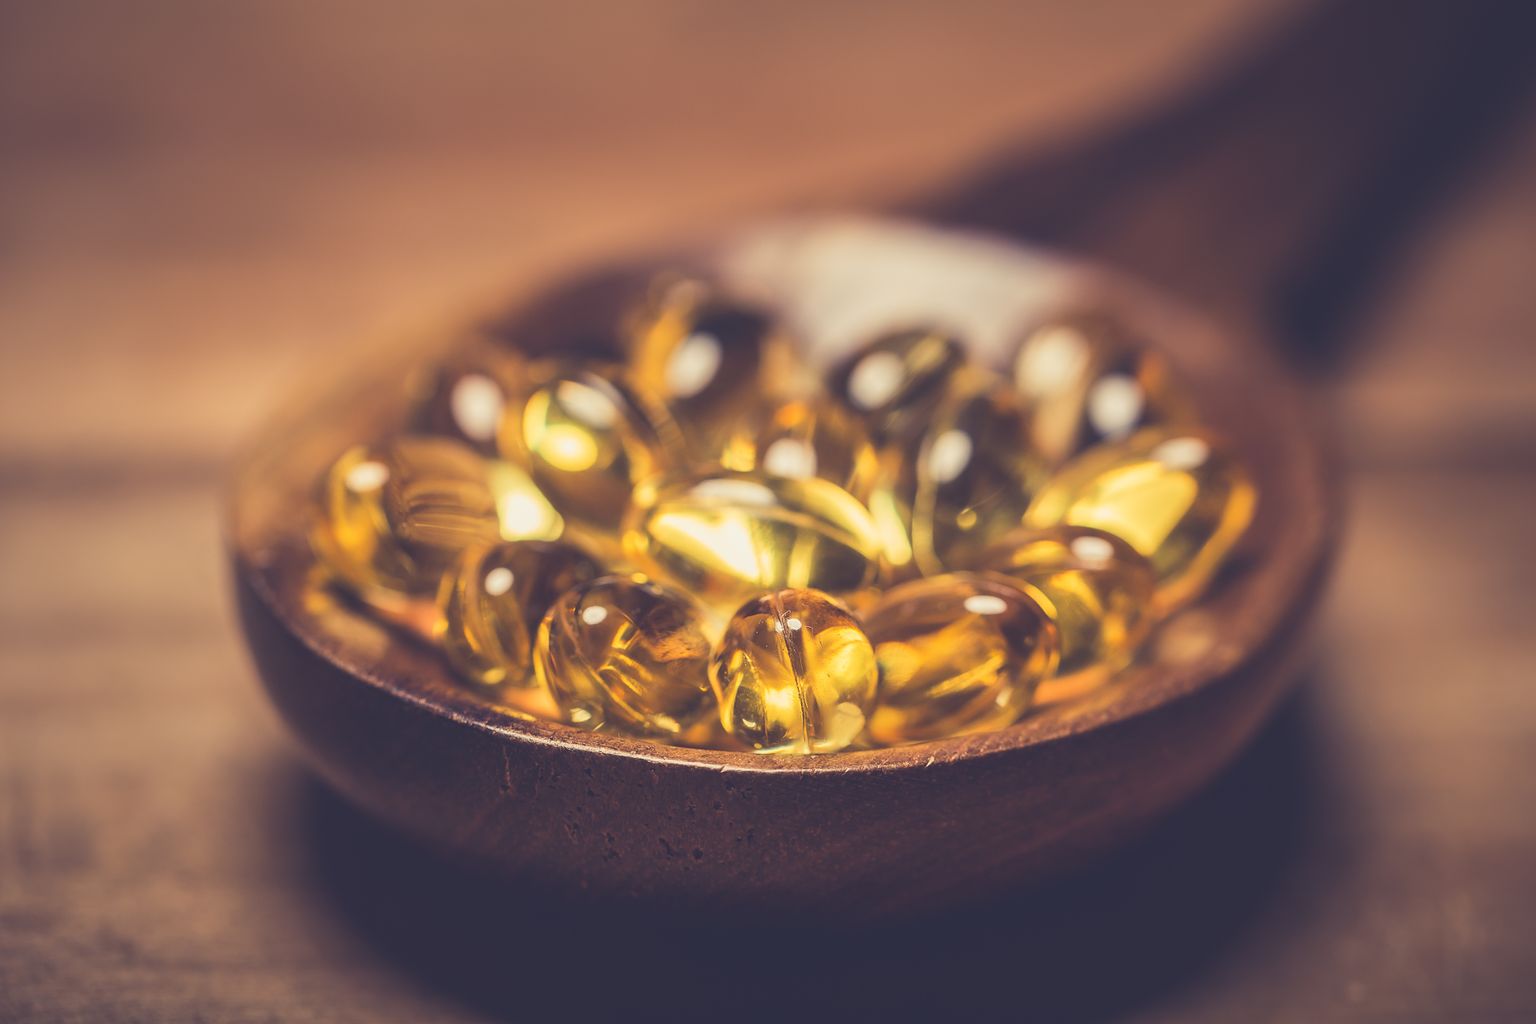 Des capsules de vitamine D dans une cuillère en bois sur une table en bois.